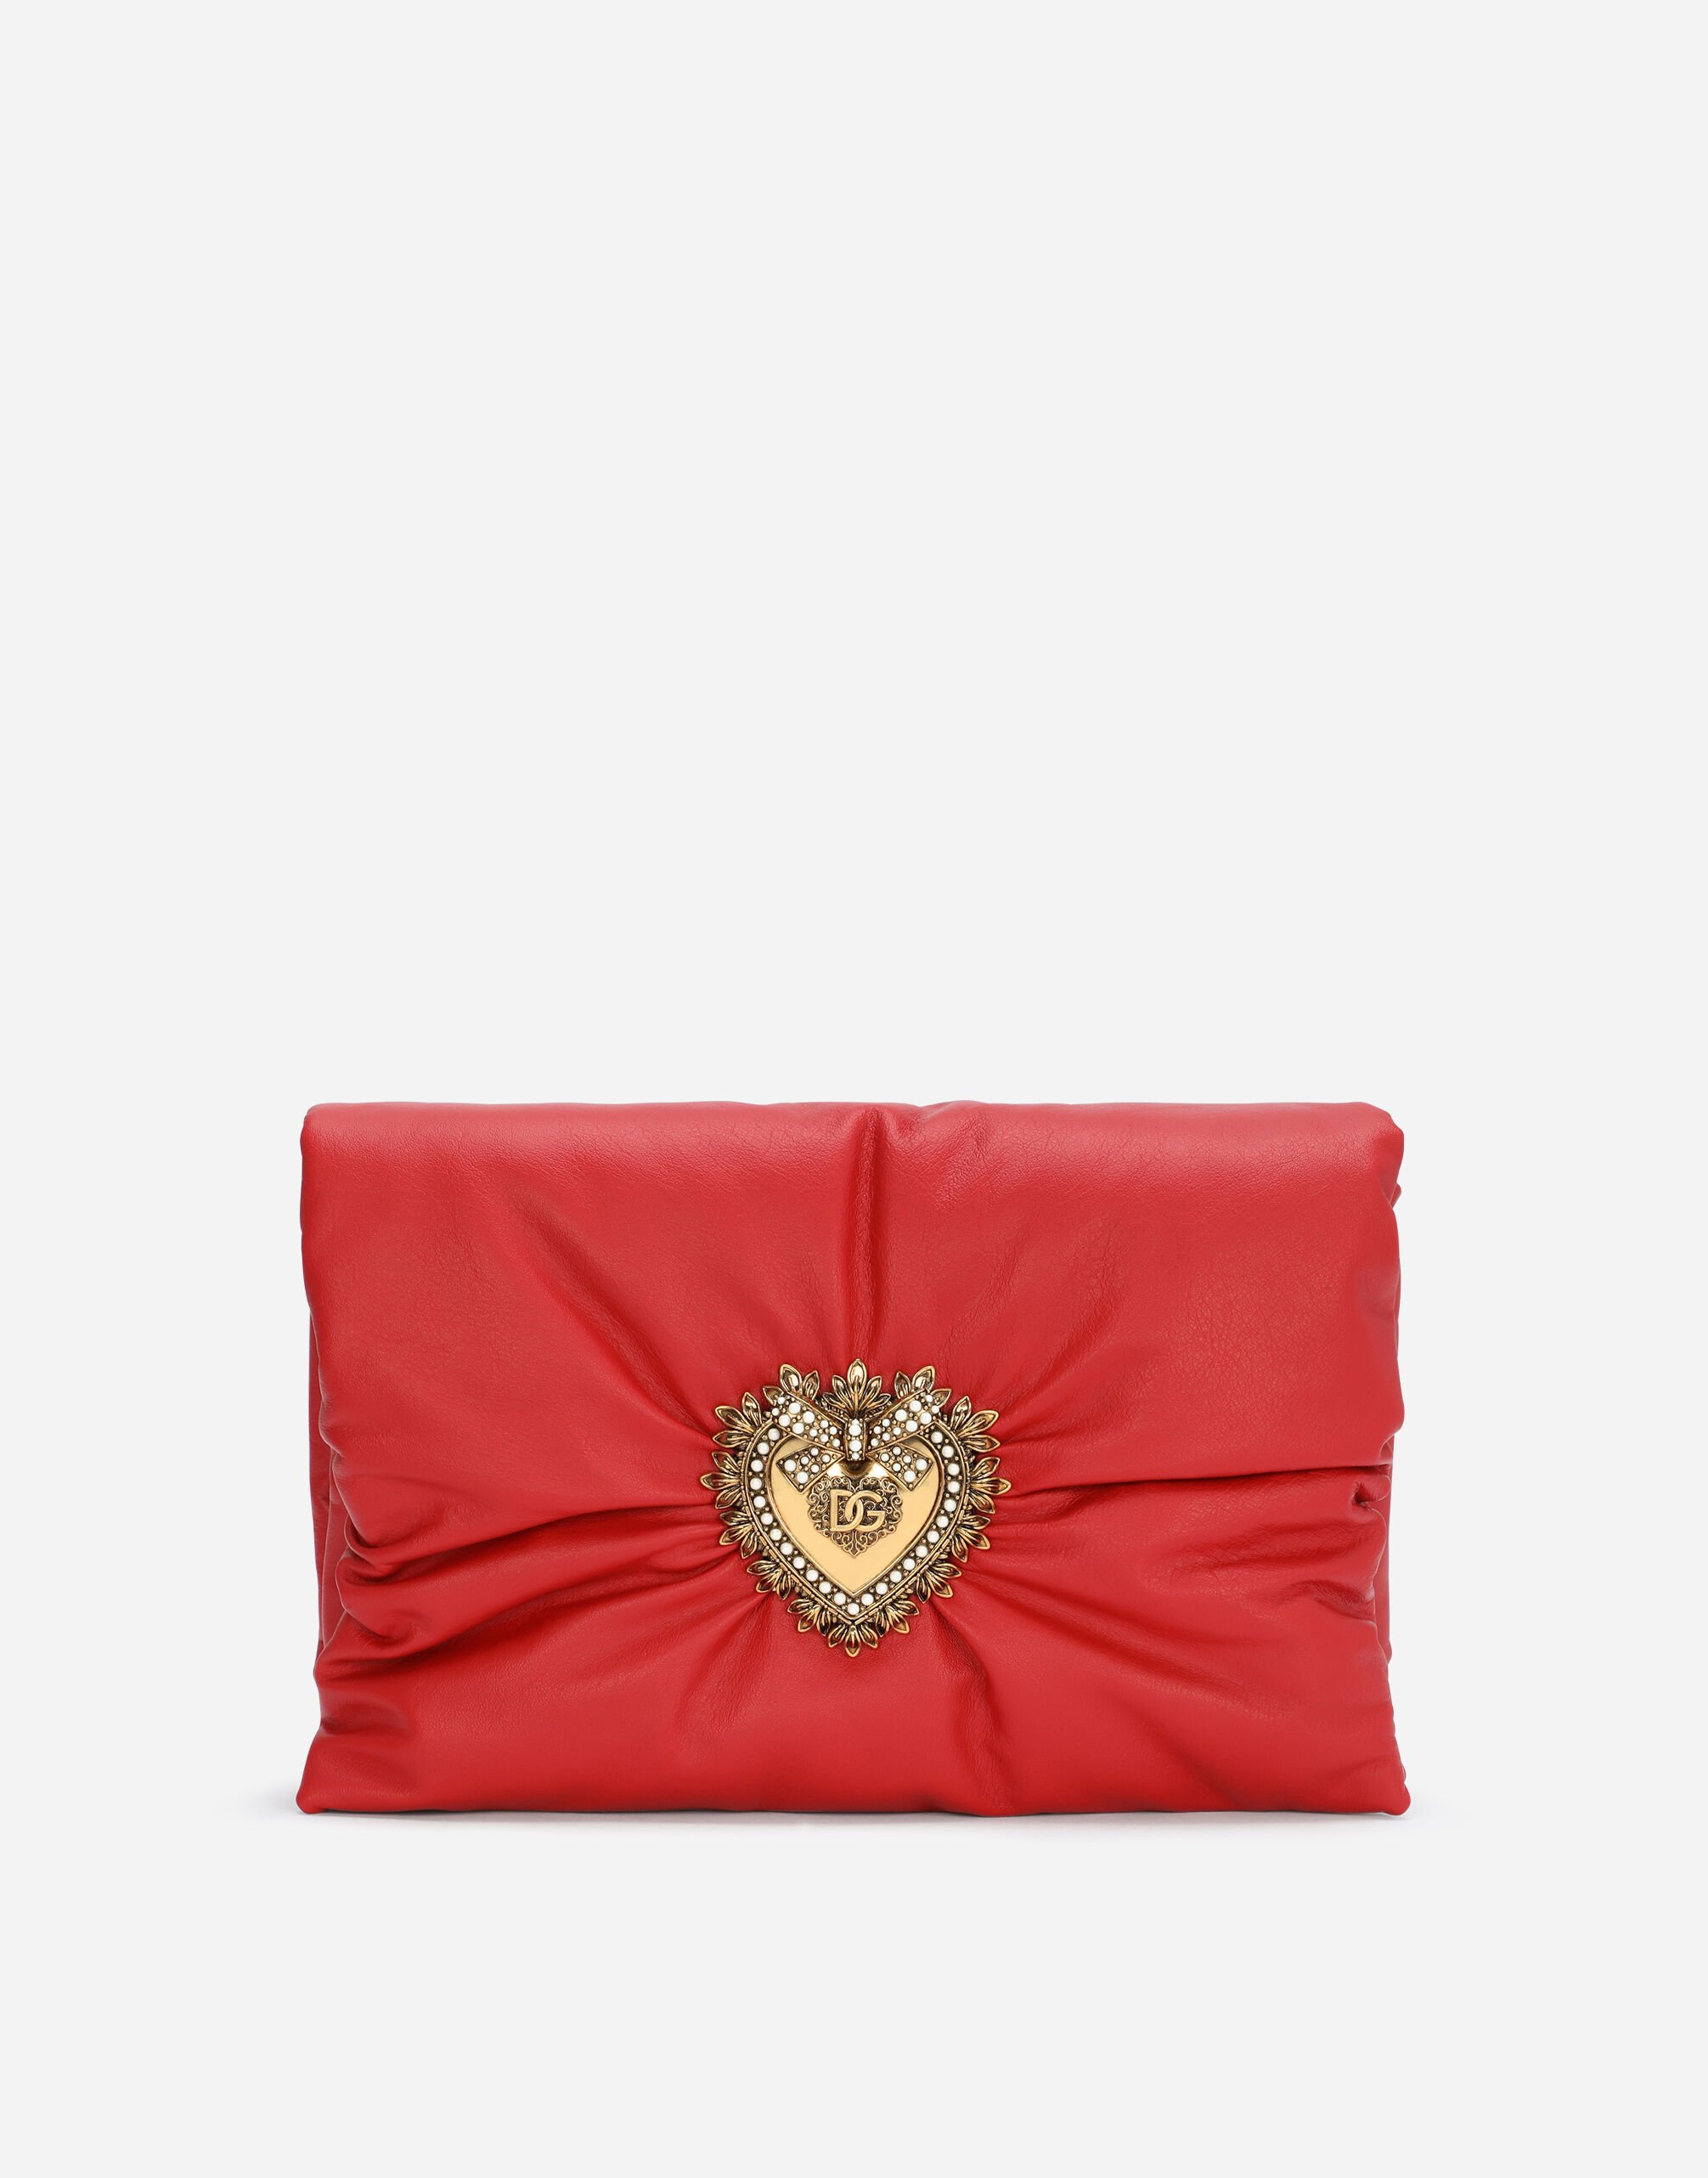 Dolce & Gabbana Medium calfskin Devotion Soft bag Red BB6002A1001